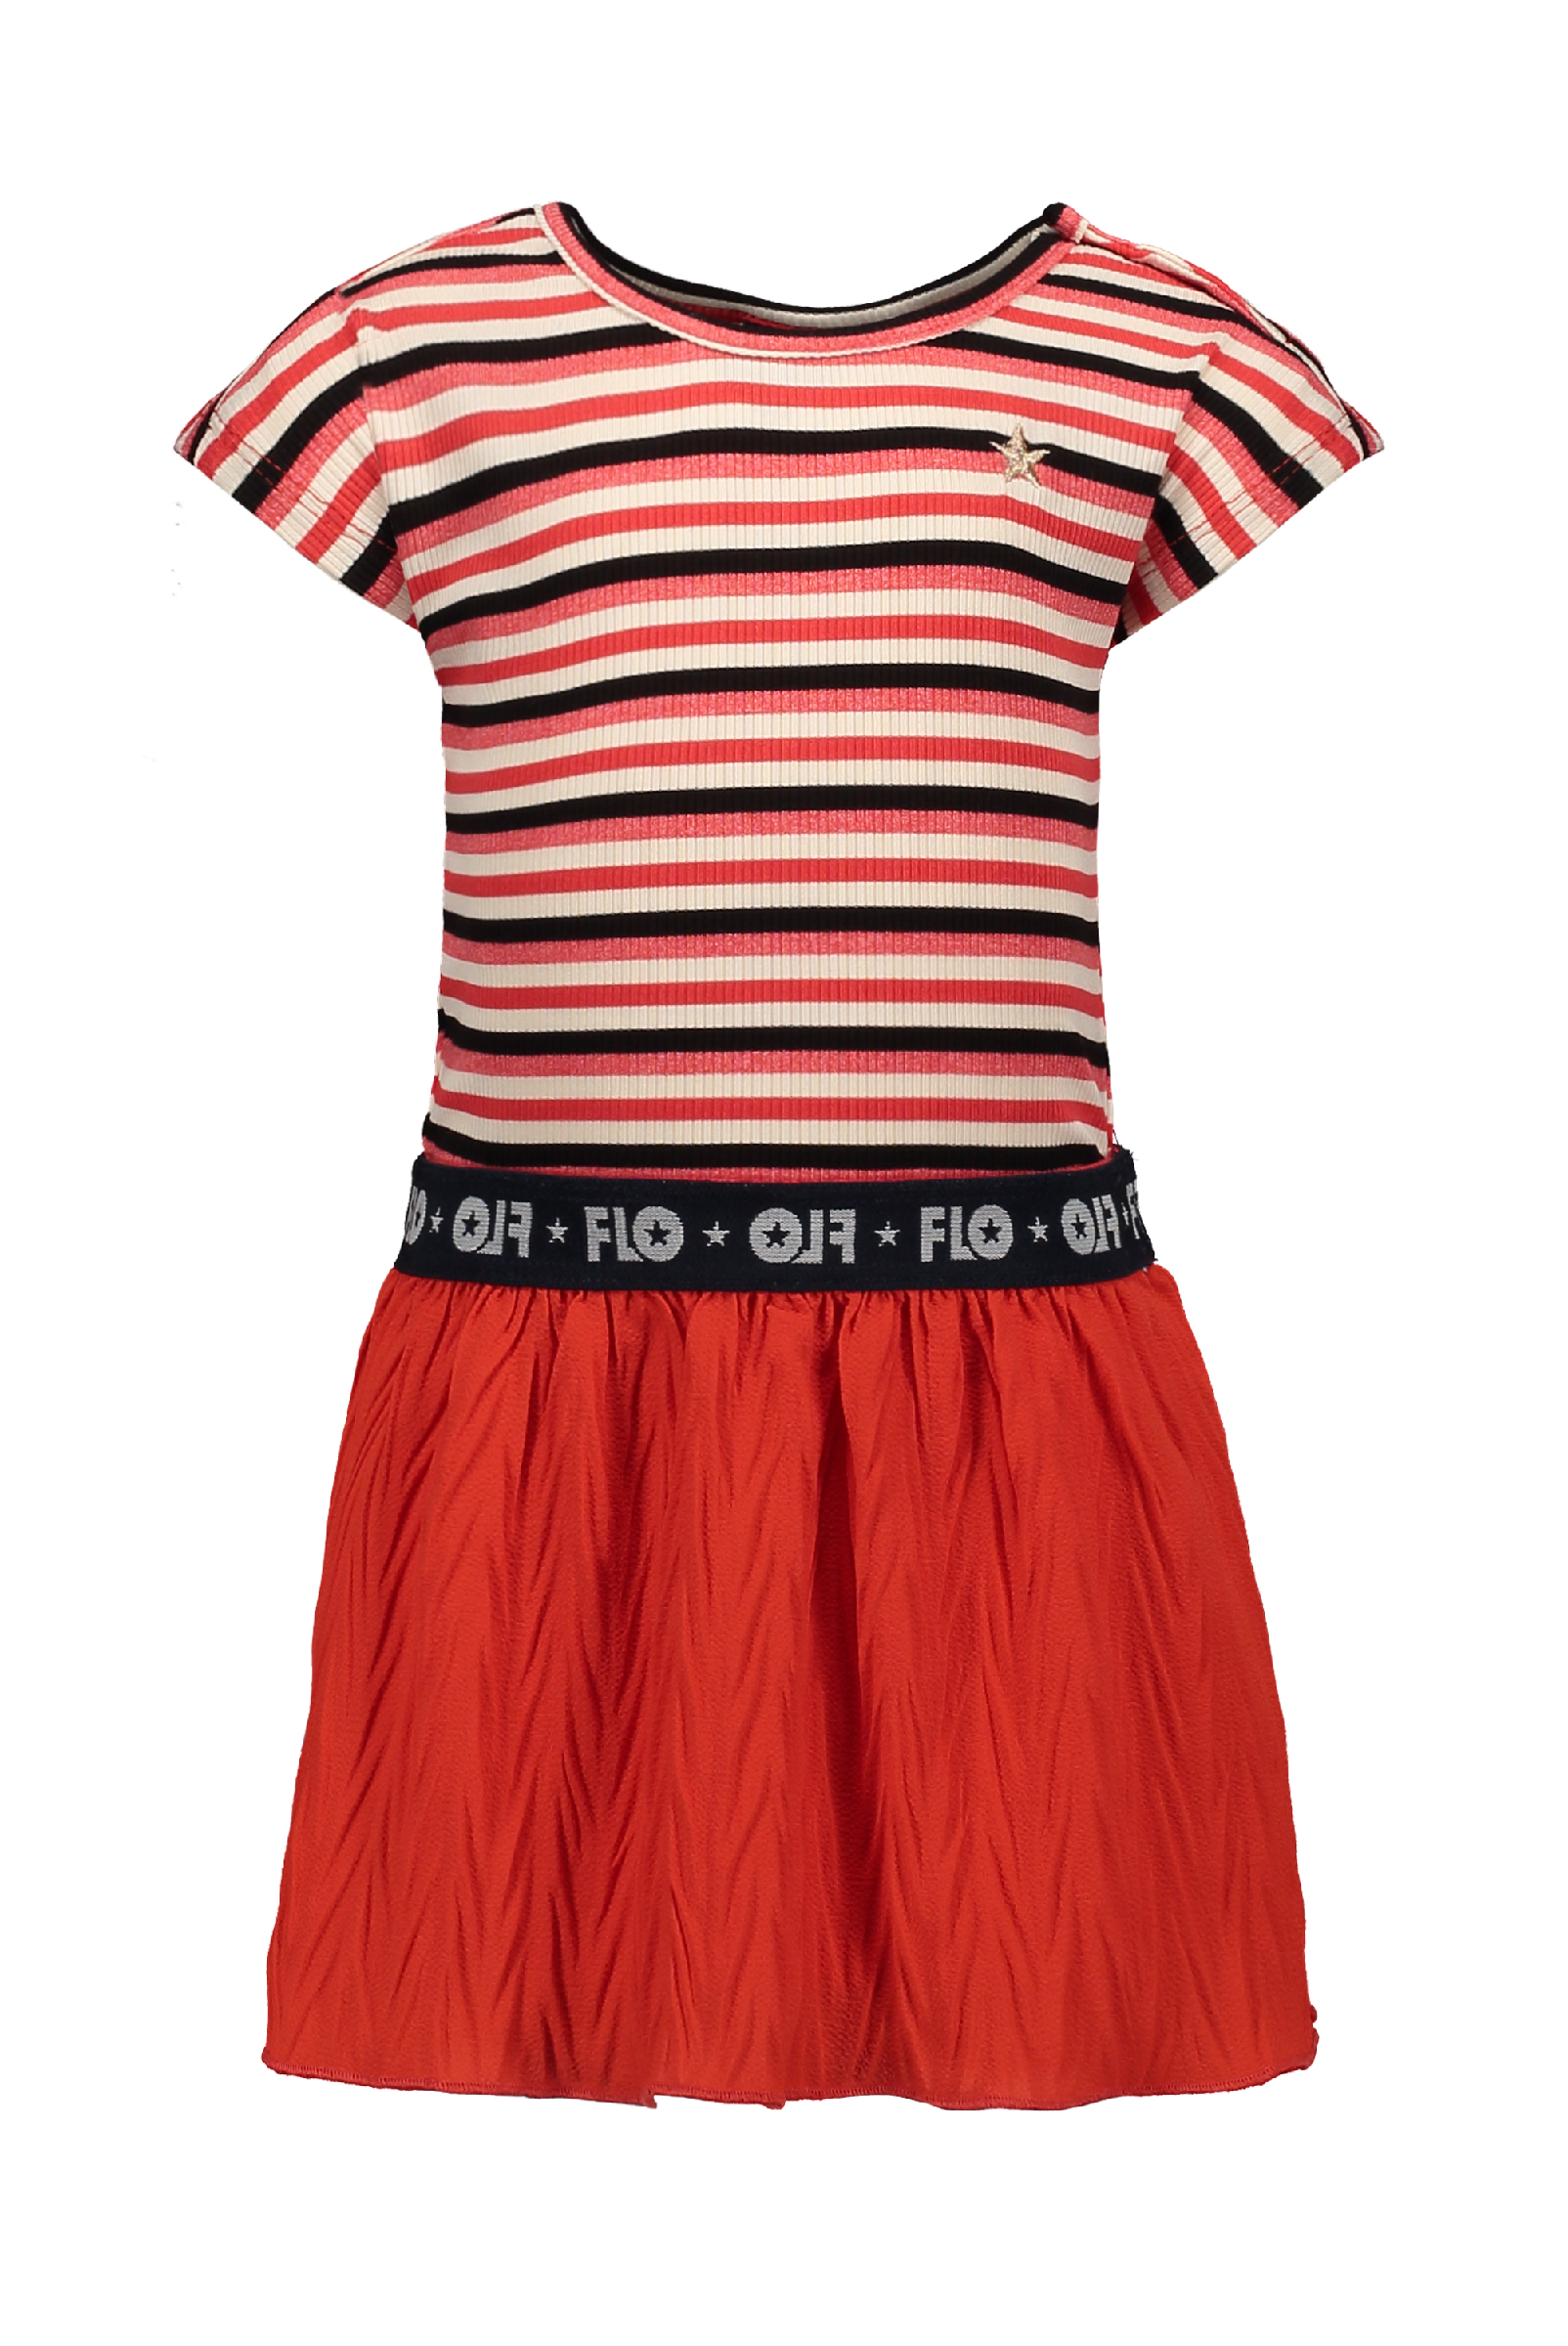 Meisjes Flo baby girls YD rib dress with fancy skirt van Flo in de kleur Zigzag in maat 92.